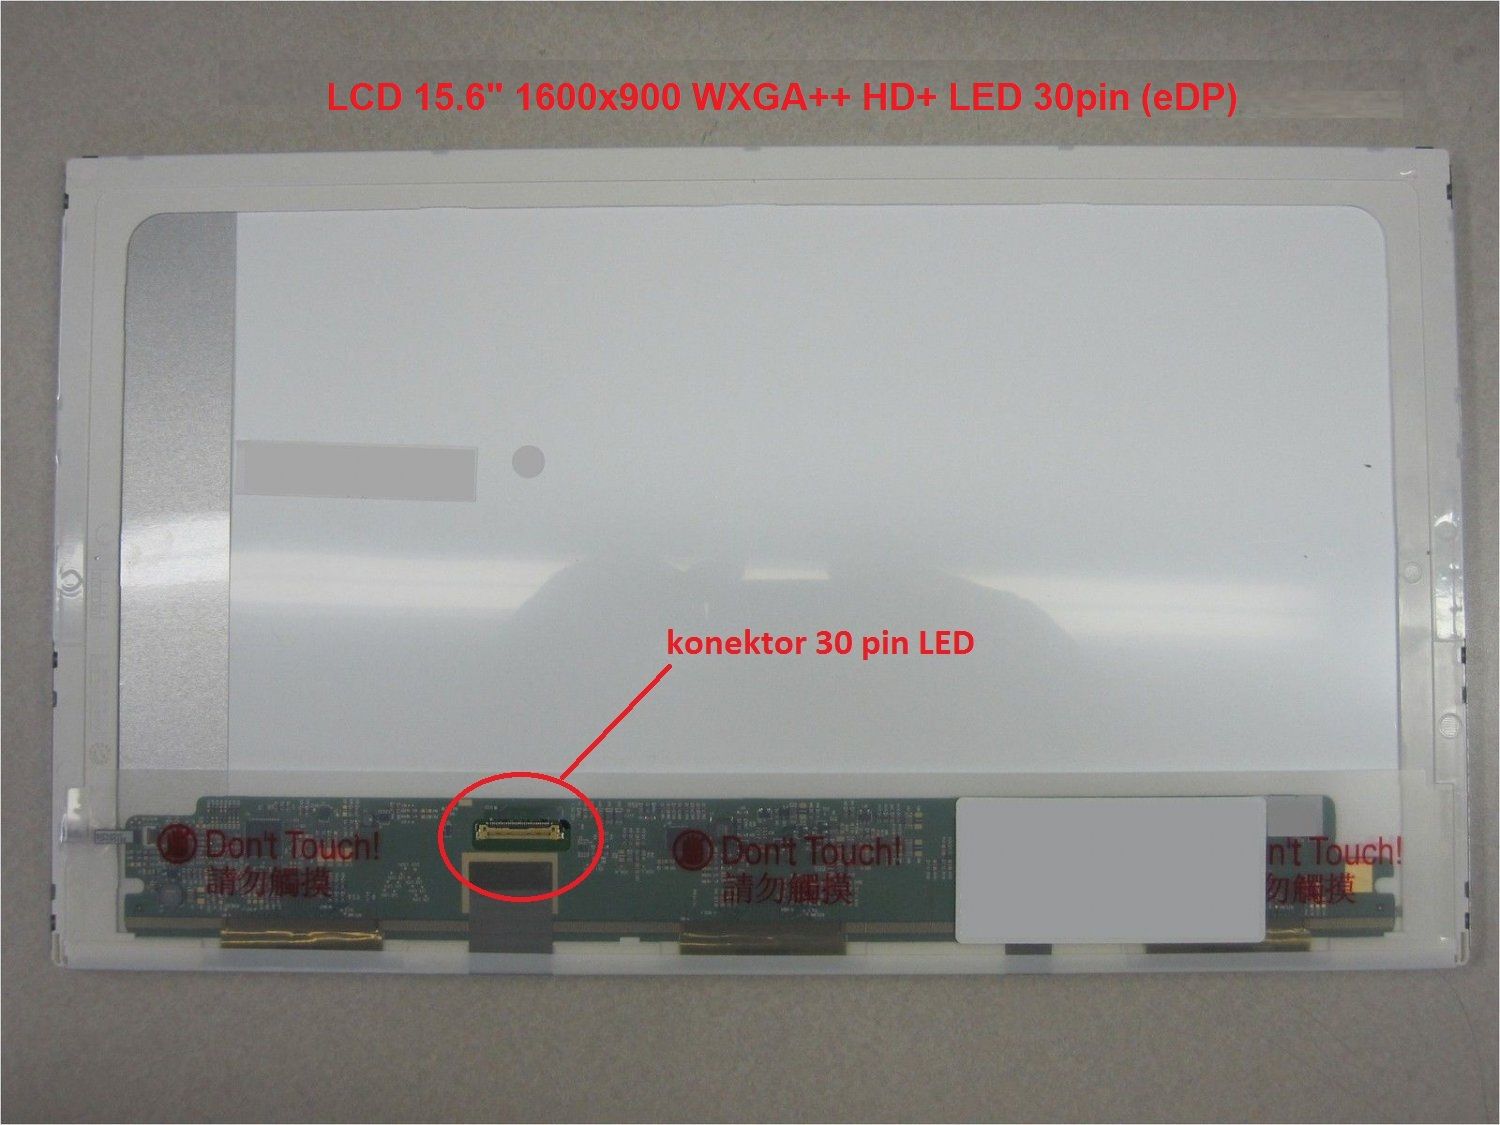 LCD 15.6" 1600x900 WXGA++ HD+ LED 30pin (eDP)